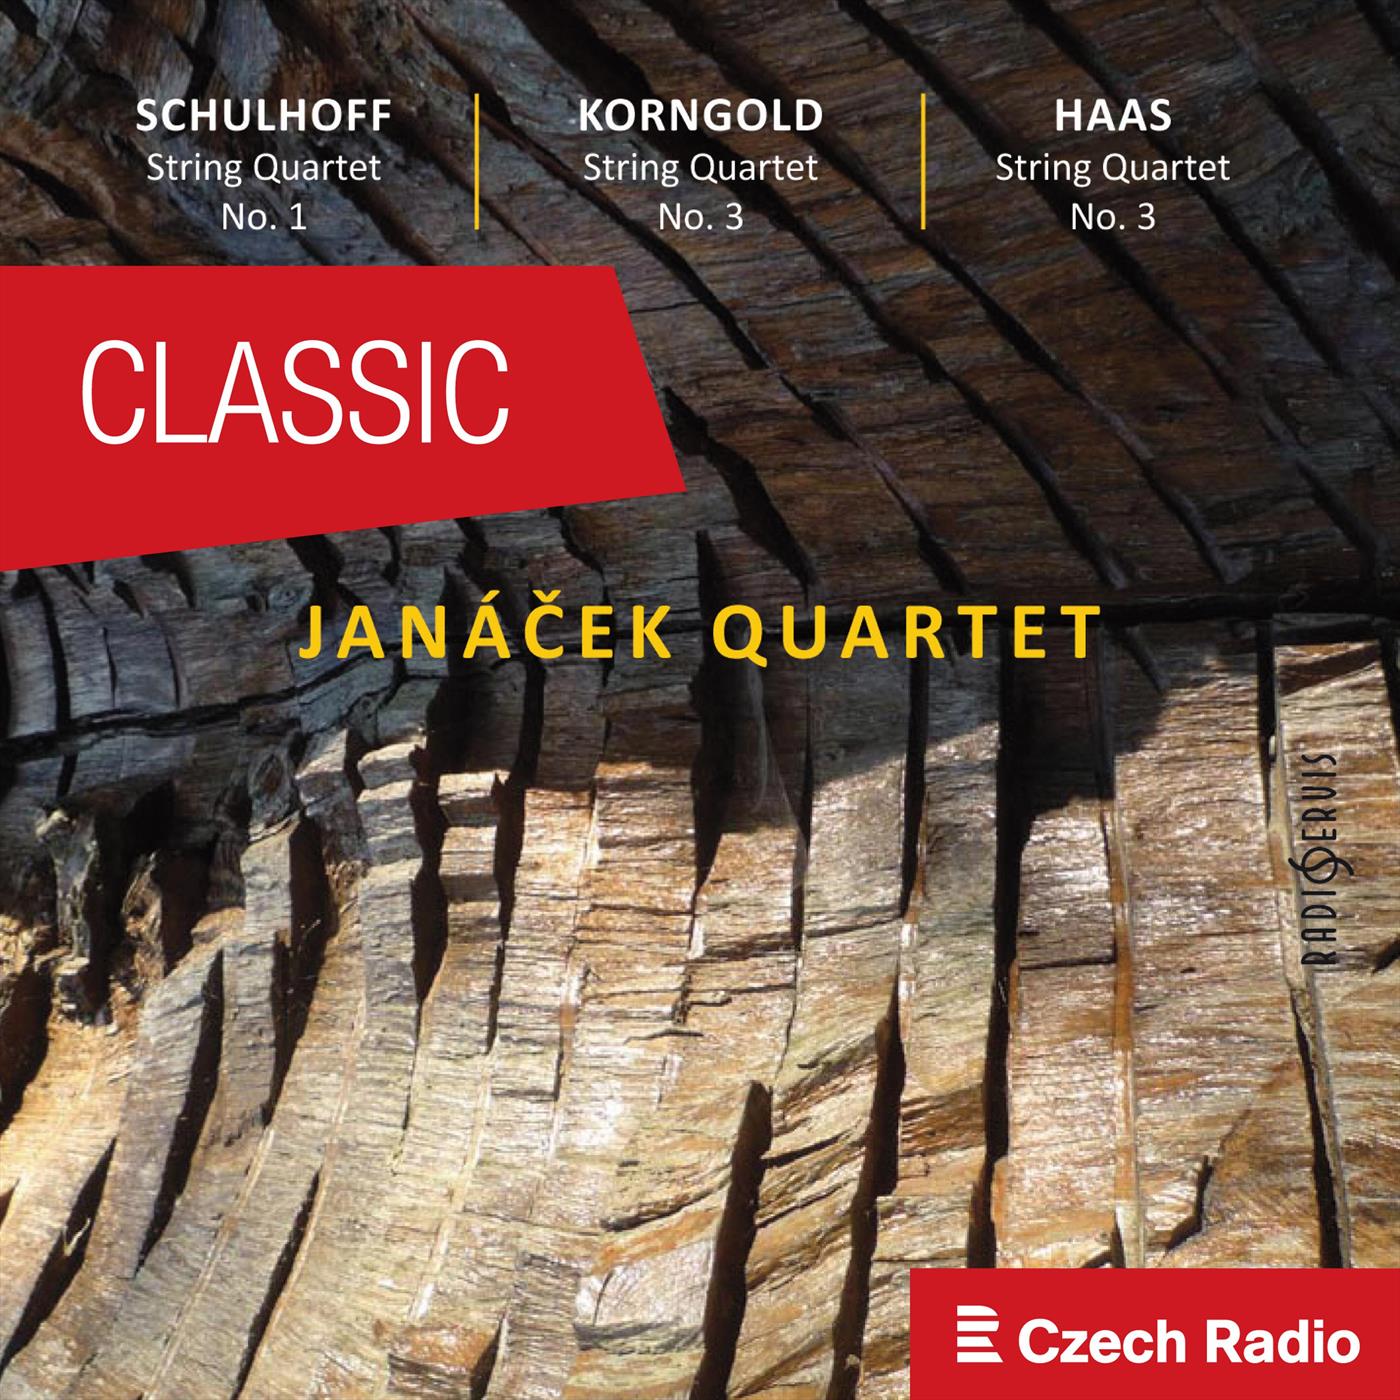 Jana ek Quartet plays Schulhoff, Korngold, Haas